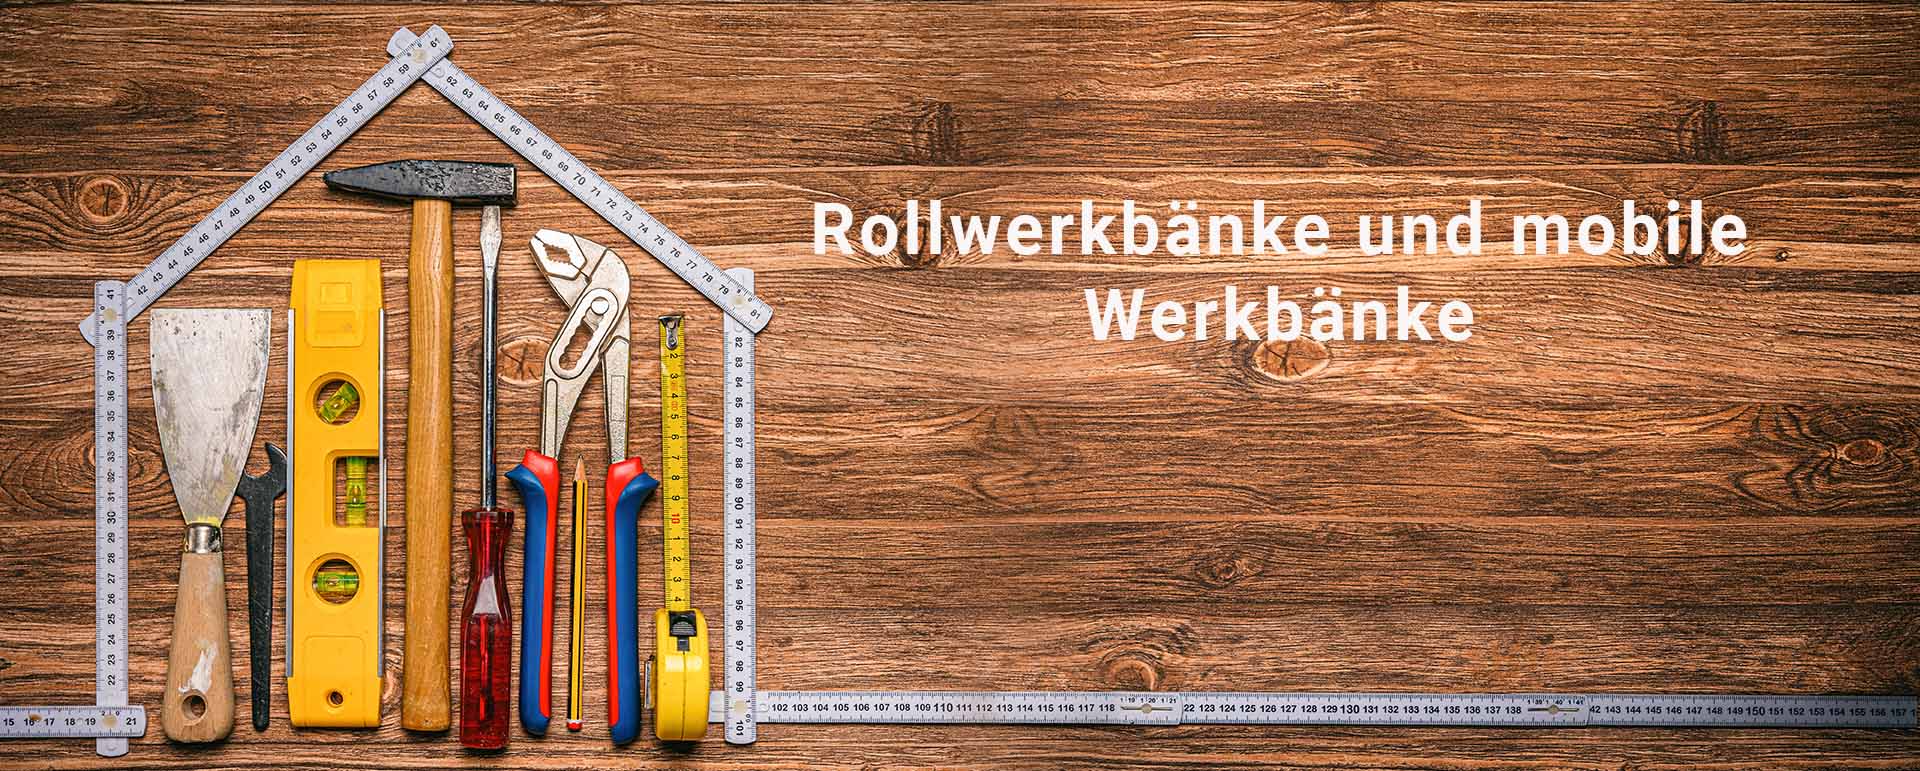 Rollwerkbänke_und_mobile_Werkbänke_Header_AdobeStock_432339253